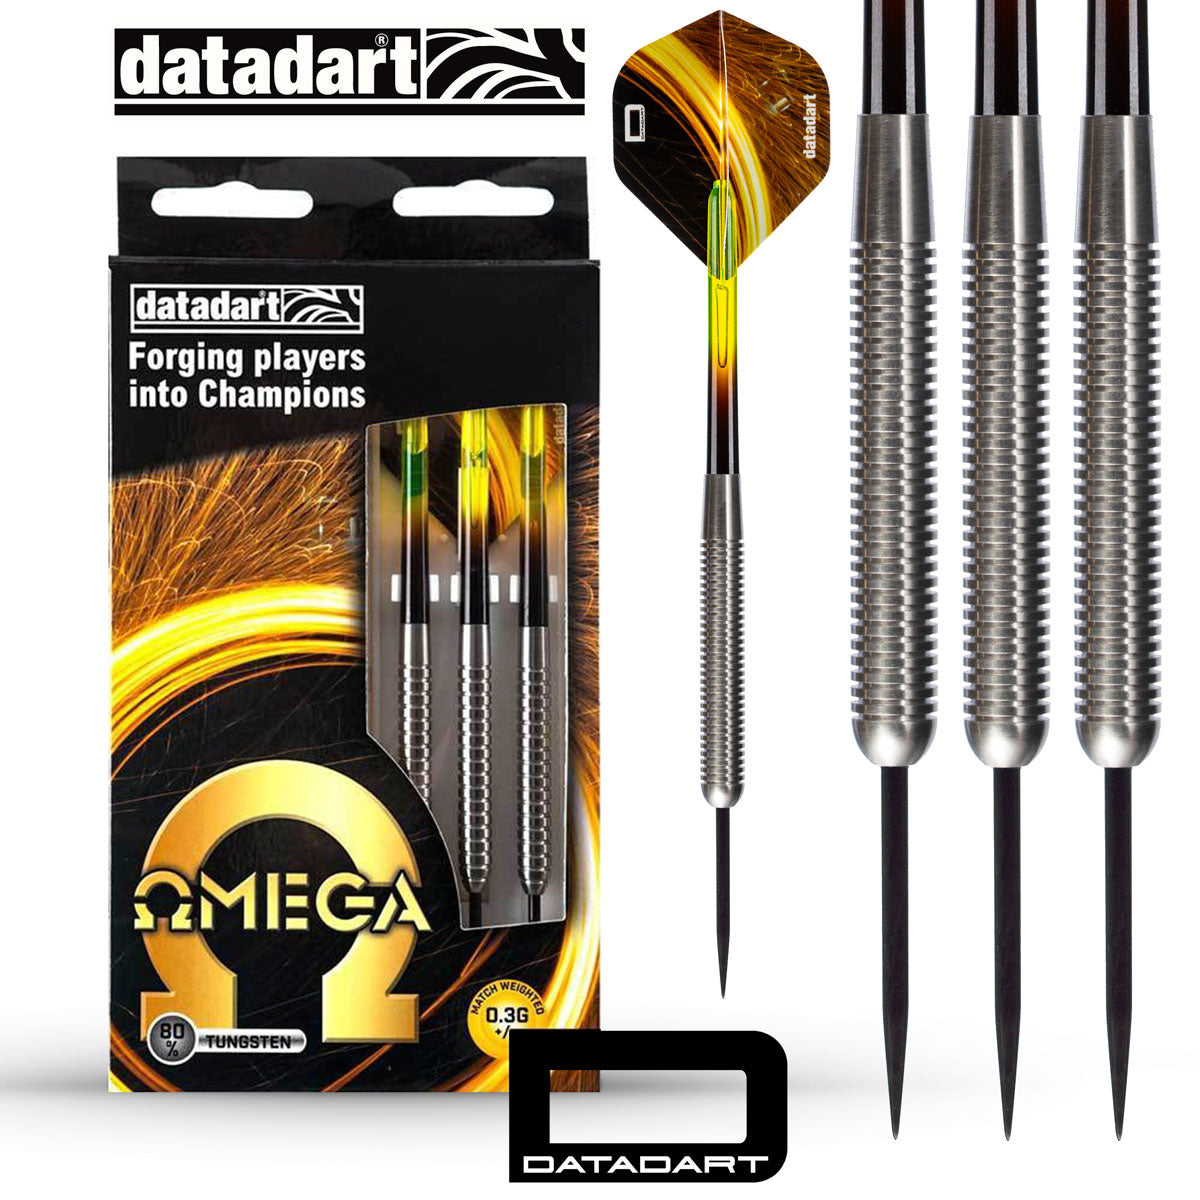 Datadart Omega Darts 26g Ringed - 80% Tungsten